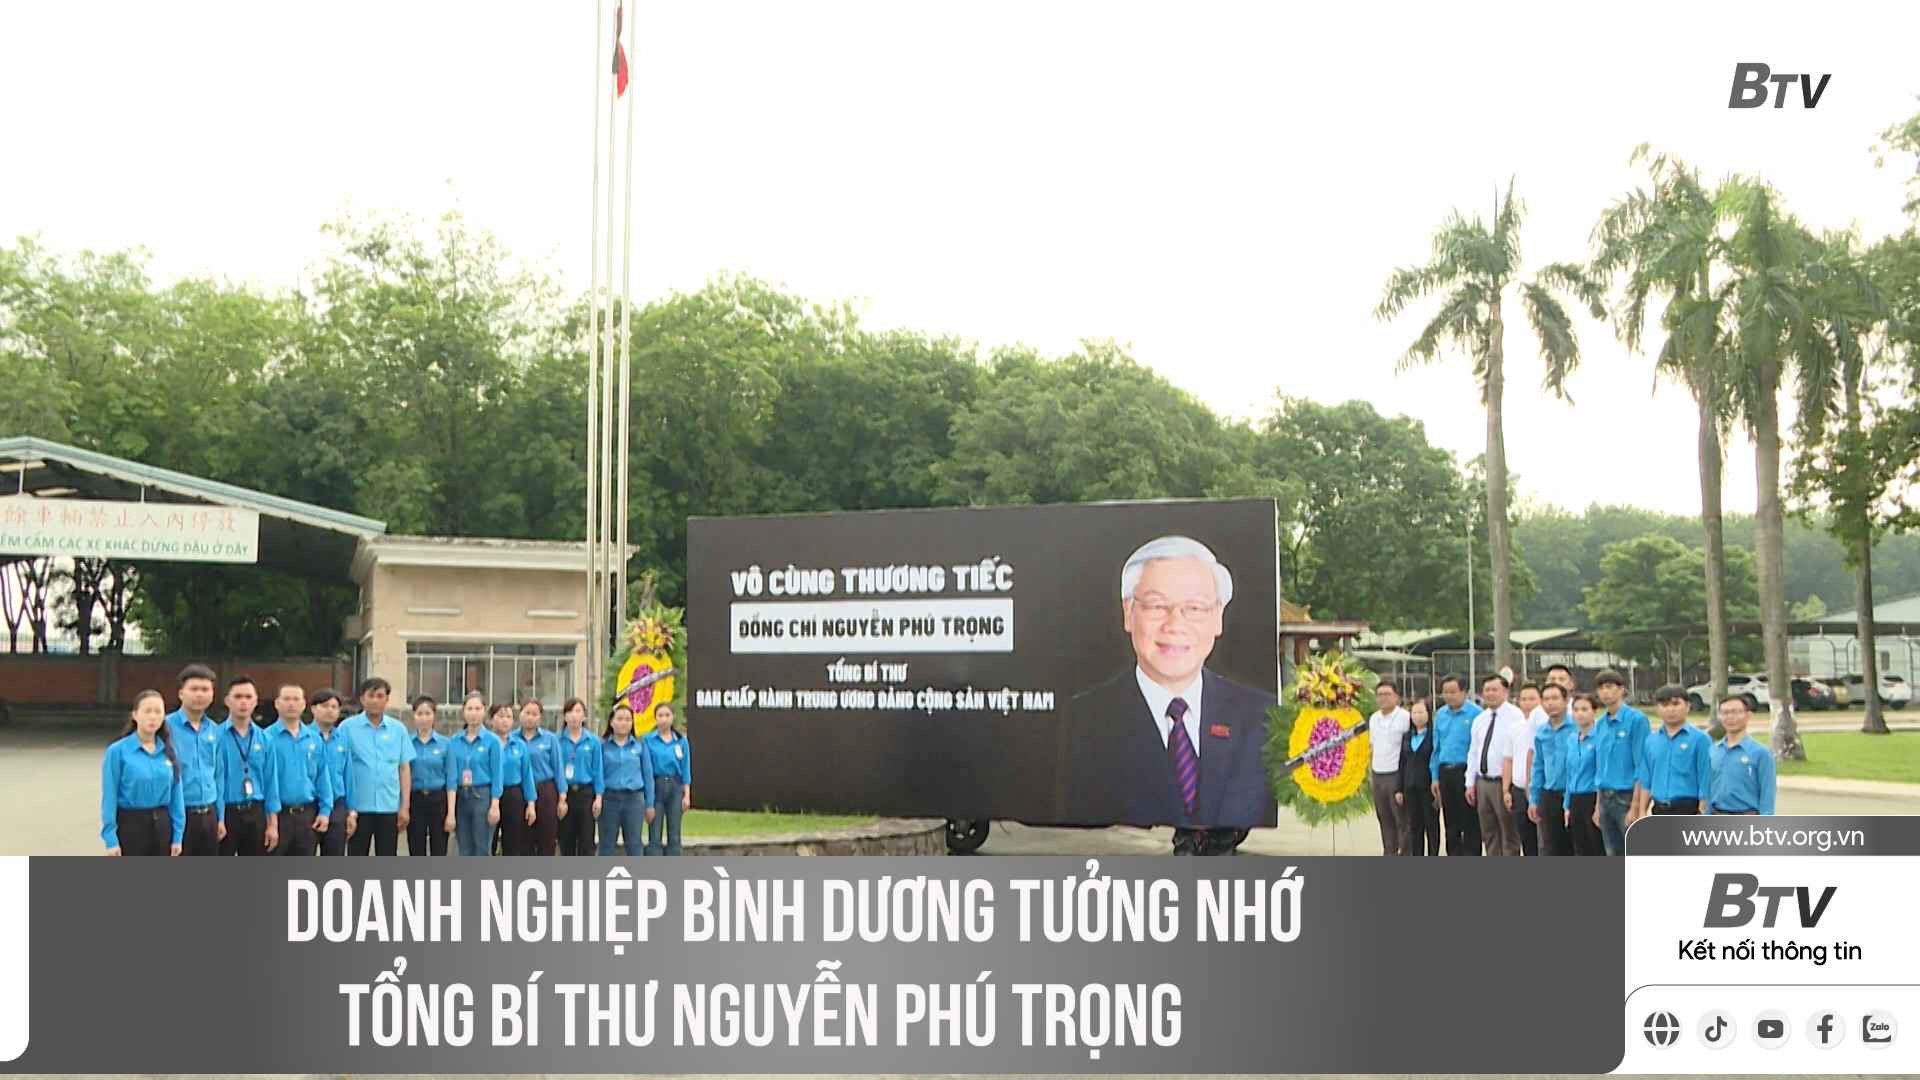 Doanh nghiệp Bình Dương tưởng nhớ Tổng Bí Thư Nguyễn Phú Trọng